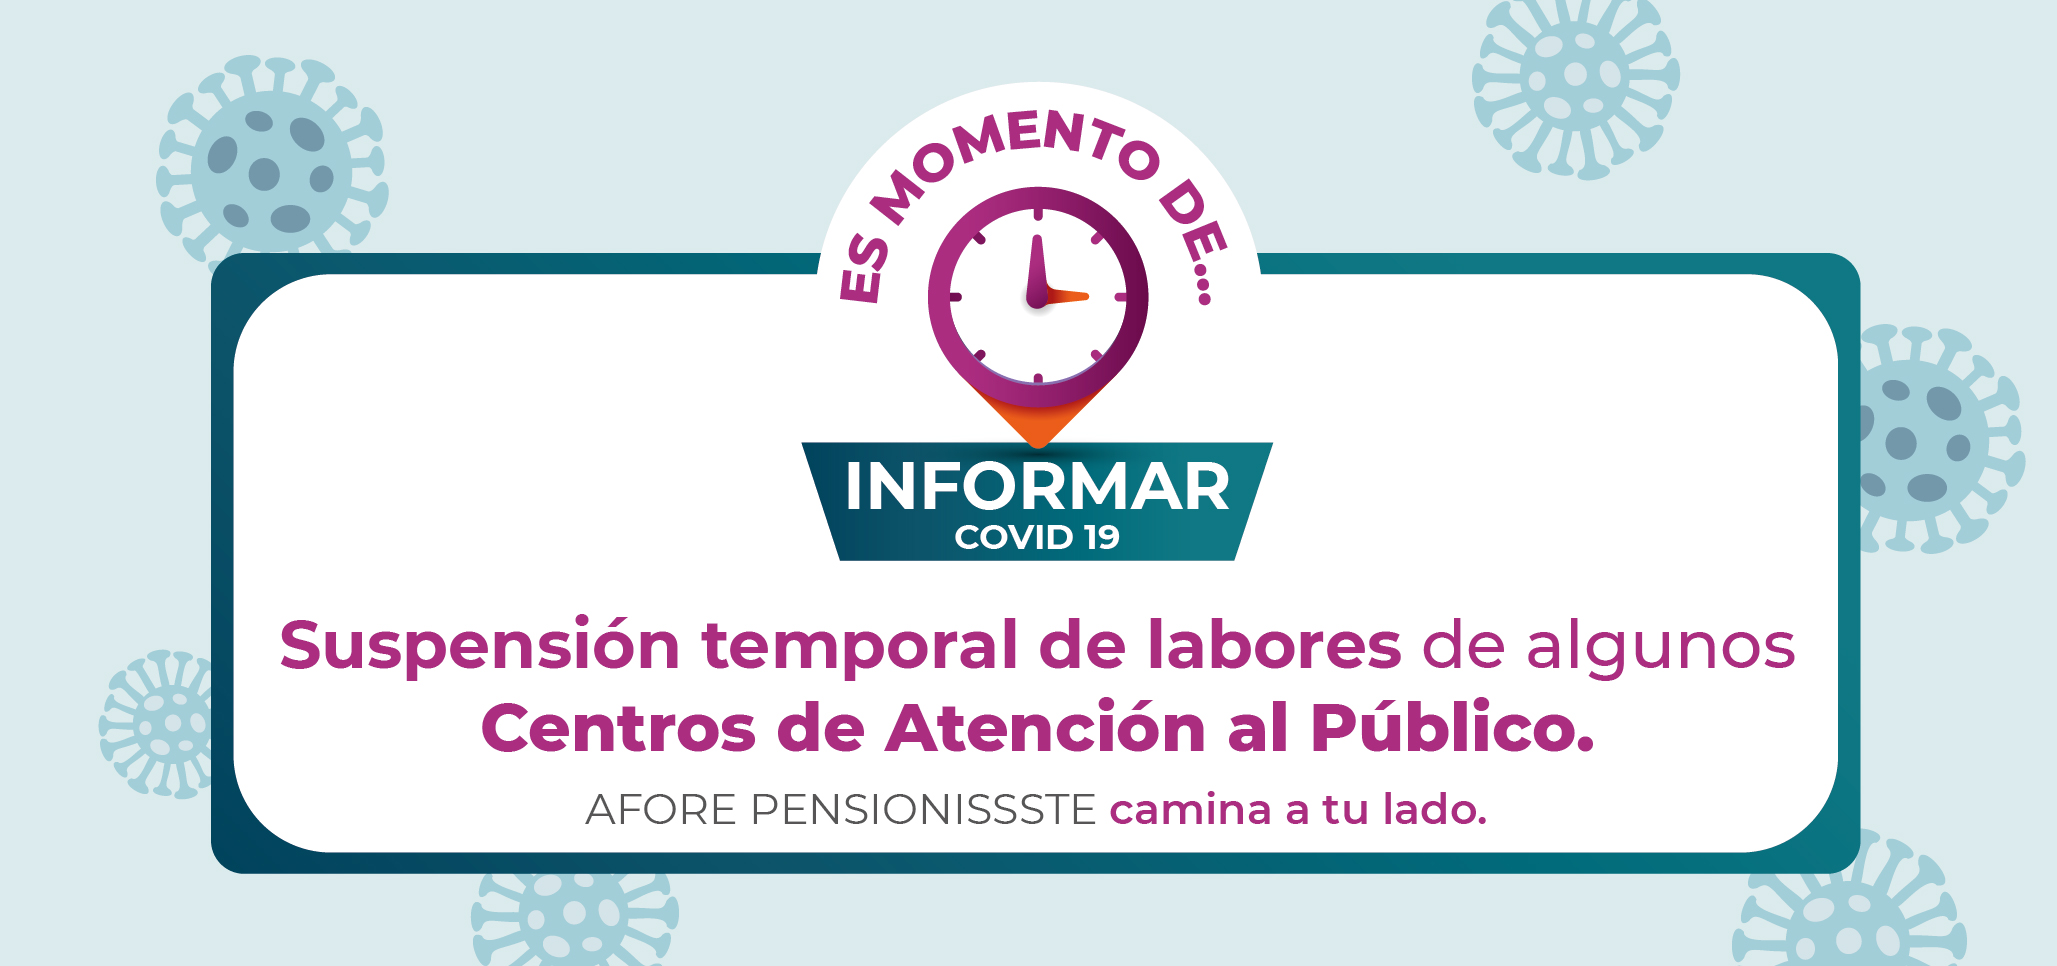 Suspensión temporal de labores en los Centros de Atención al Público de PENSIONISSSTE